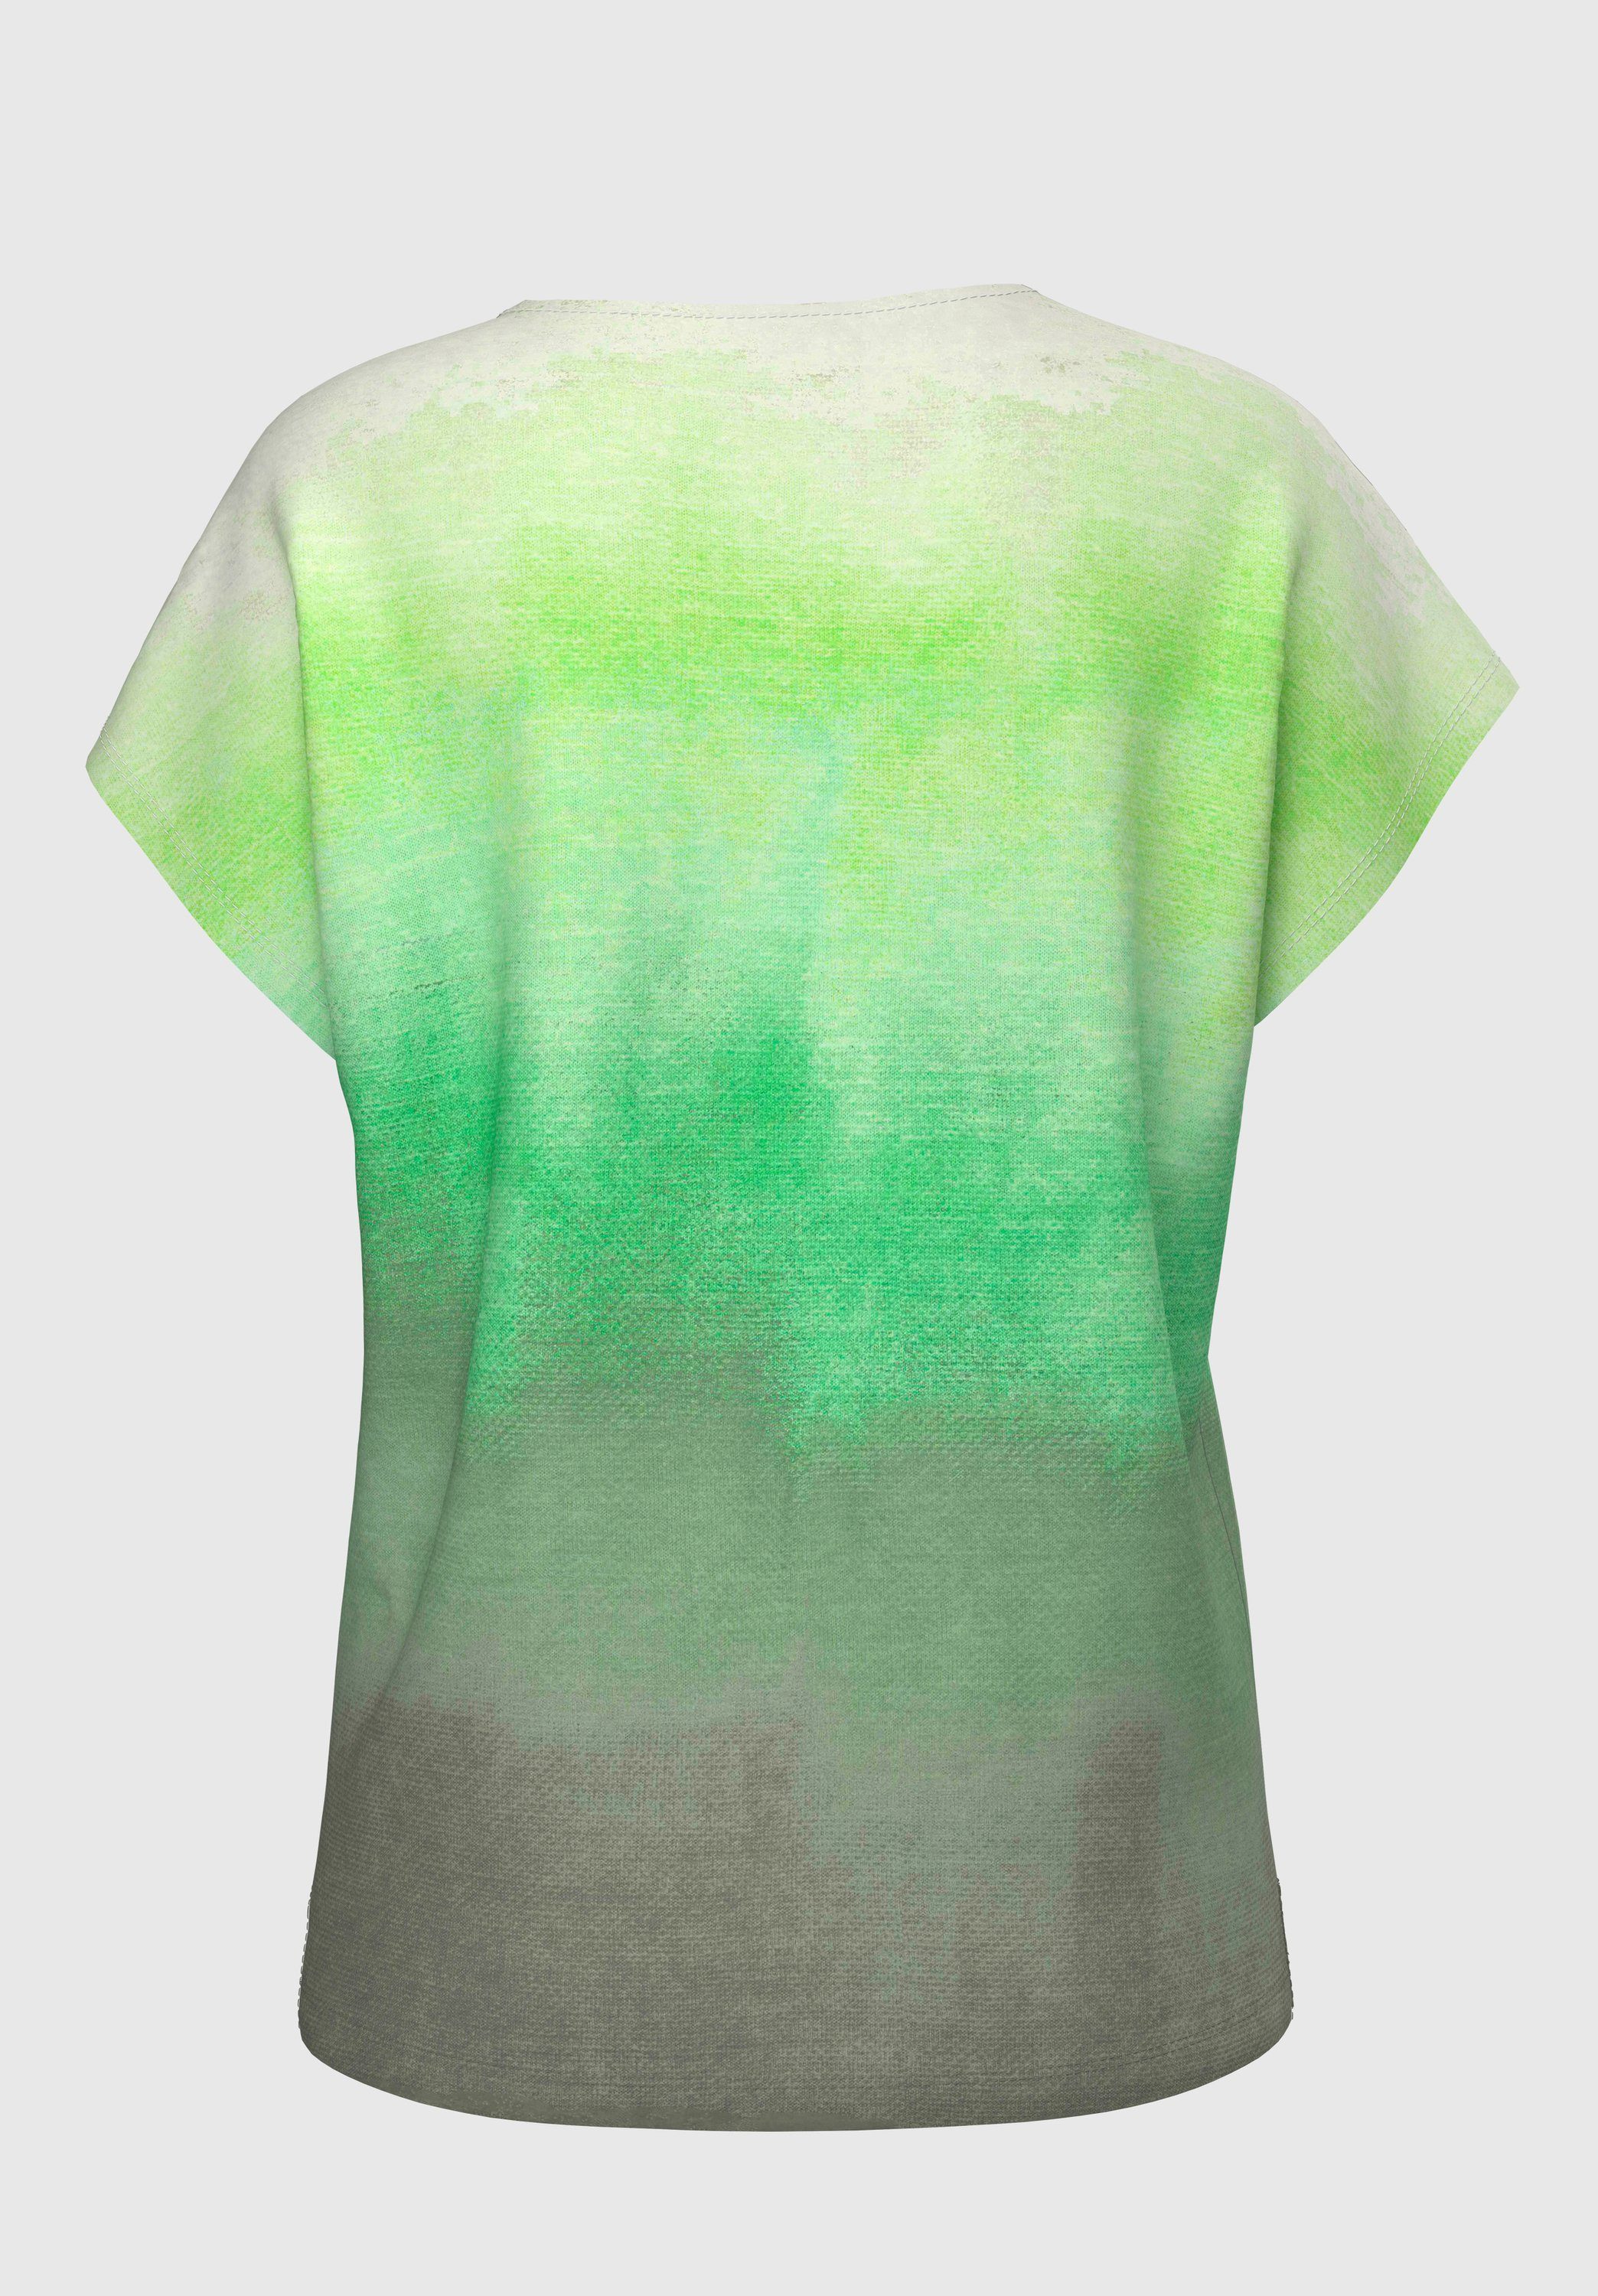 bianca Print-Shirt mit JULIE Trendfarben absoluten Frontmotiv mix coolem green in